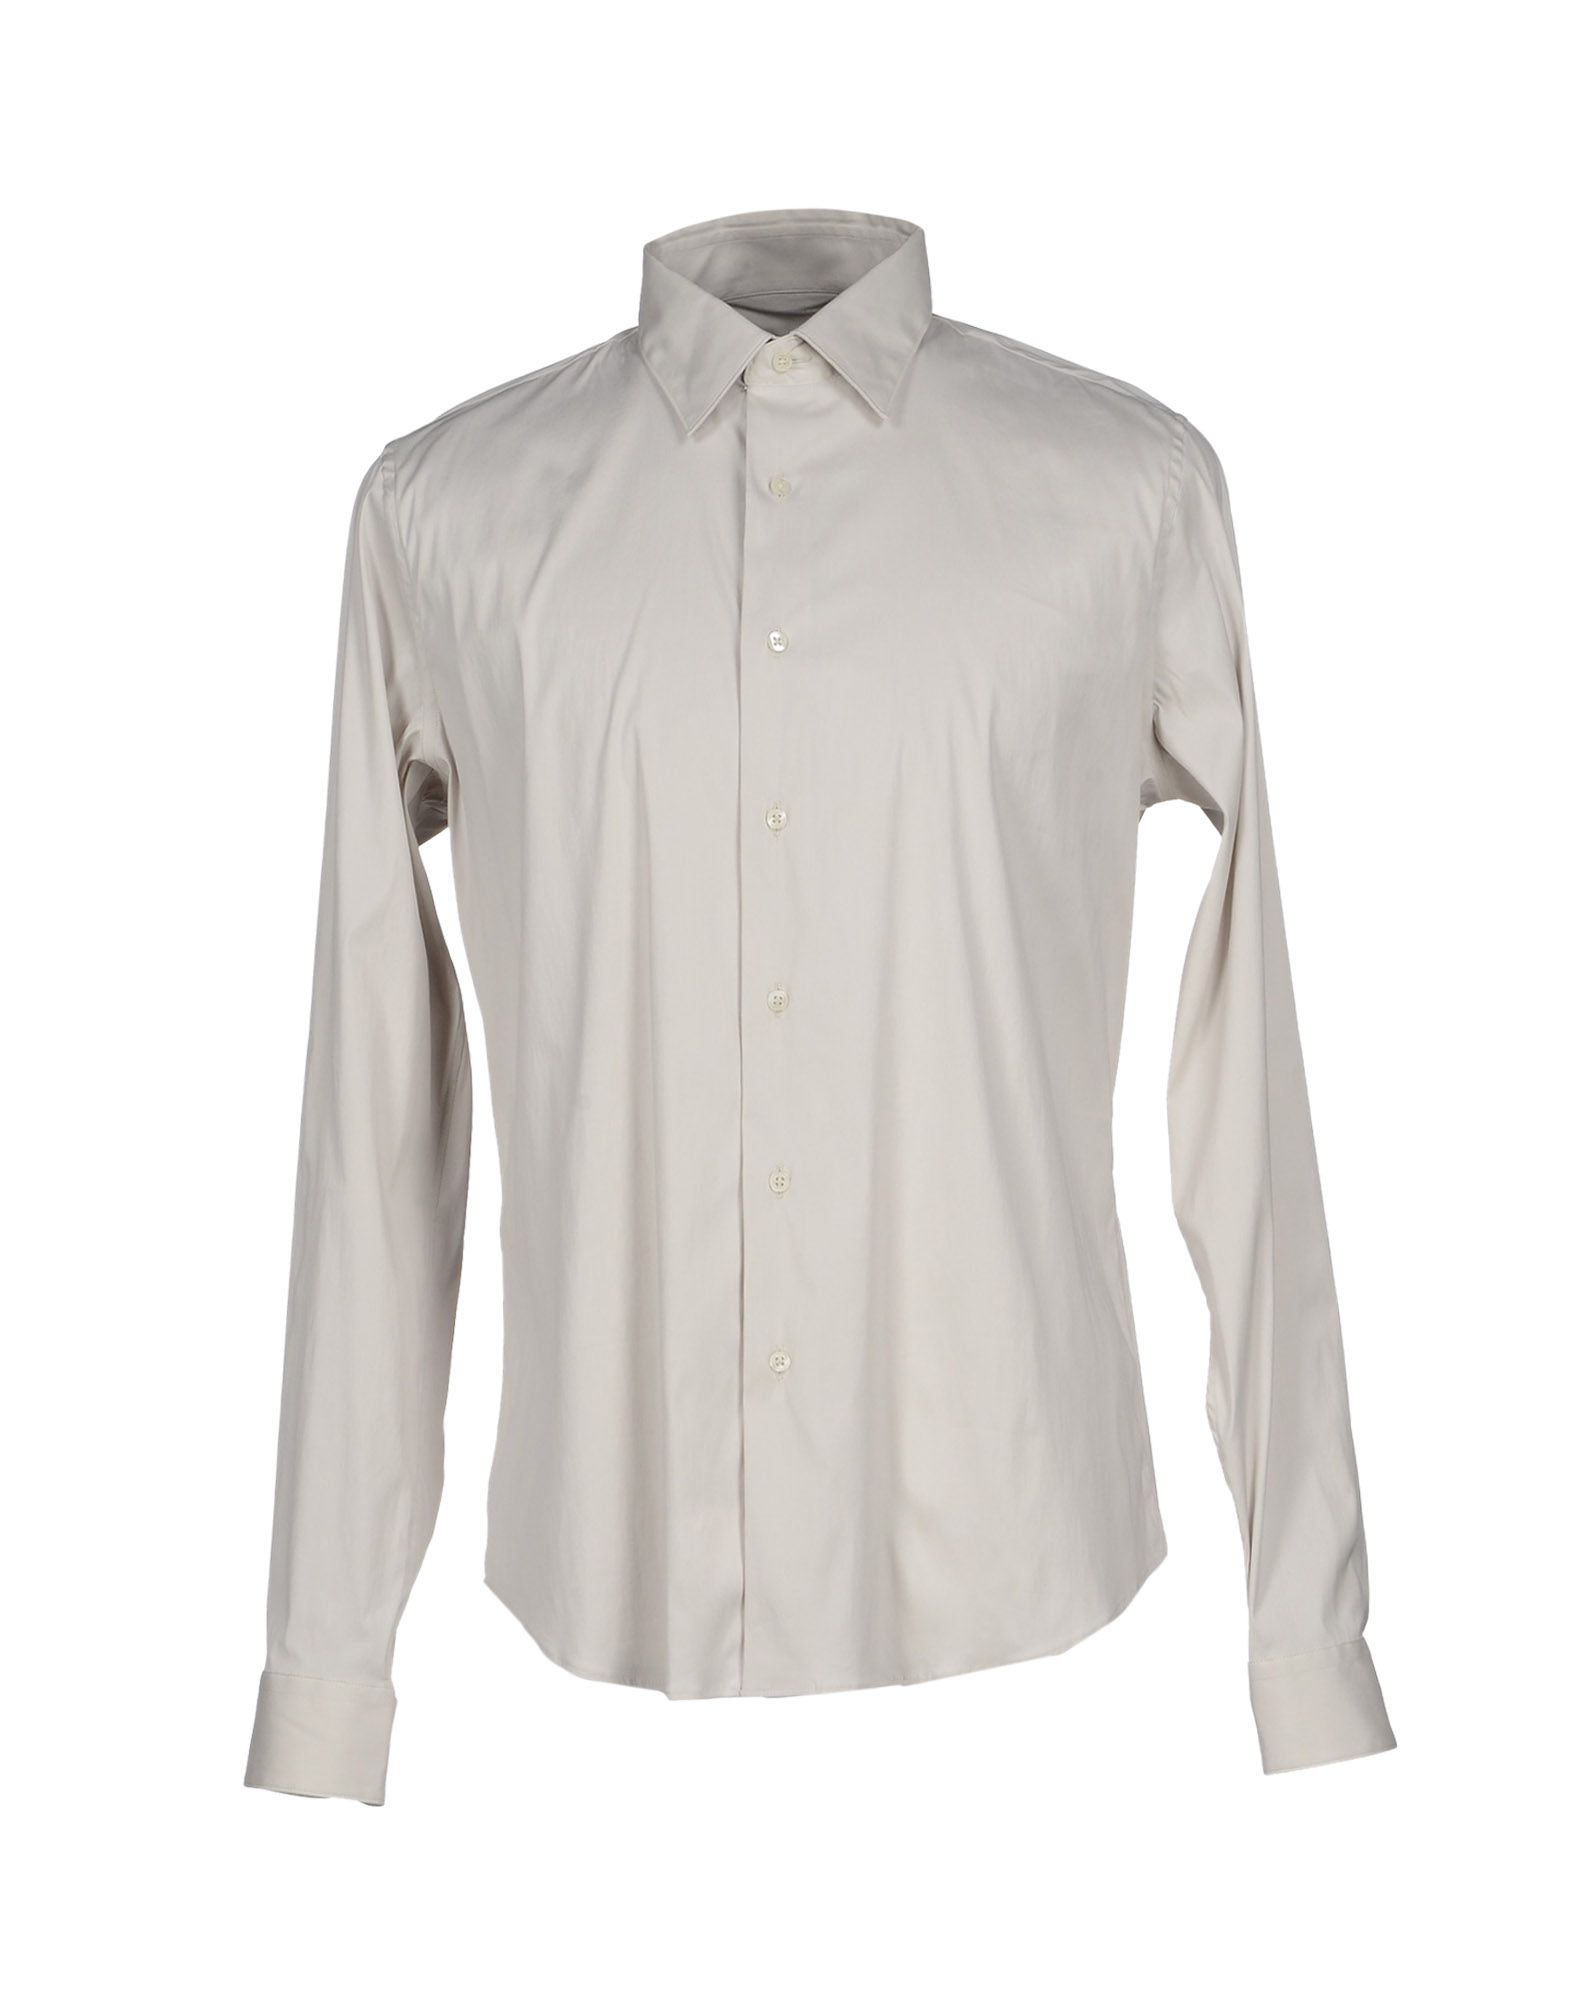 Robert Friedman Cotton Shirt in Light Grey (Gray) for Men - Lyst